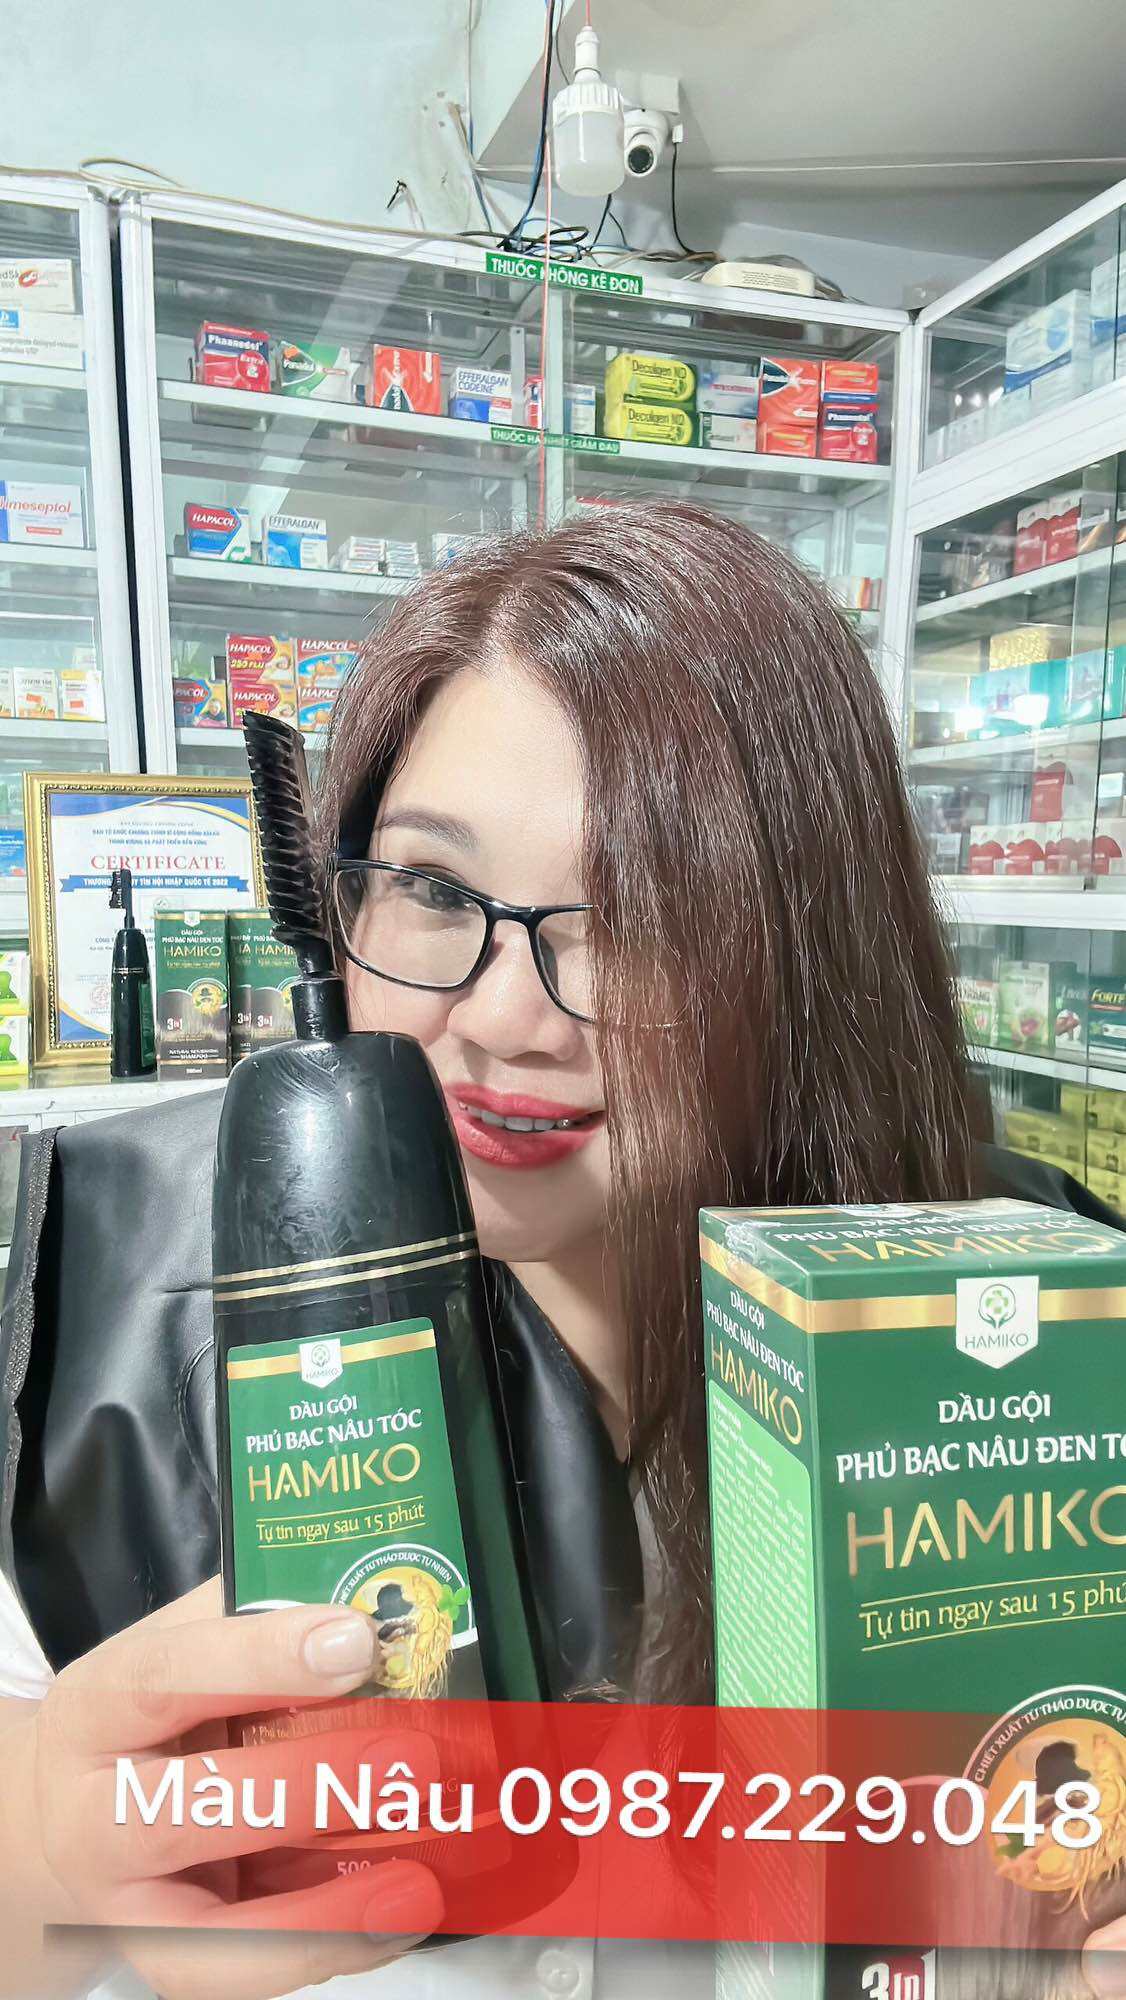 Dầu gội phủ bạc Hamiko đen tóc 500 ml chính hãng mẫu mới